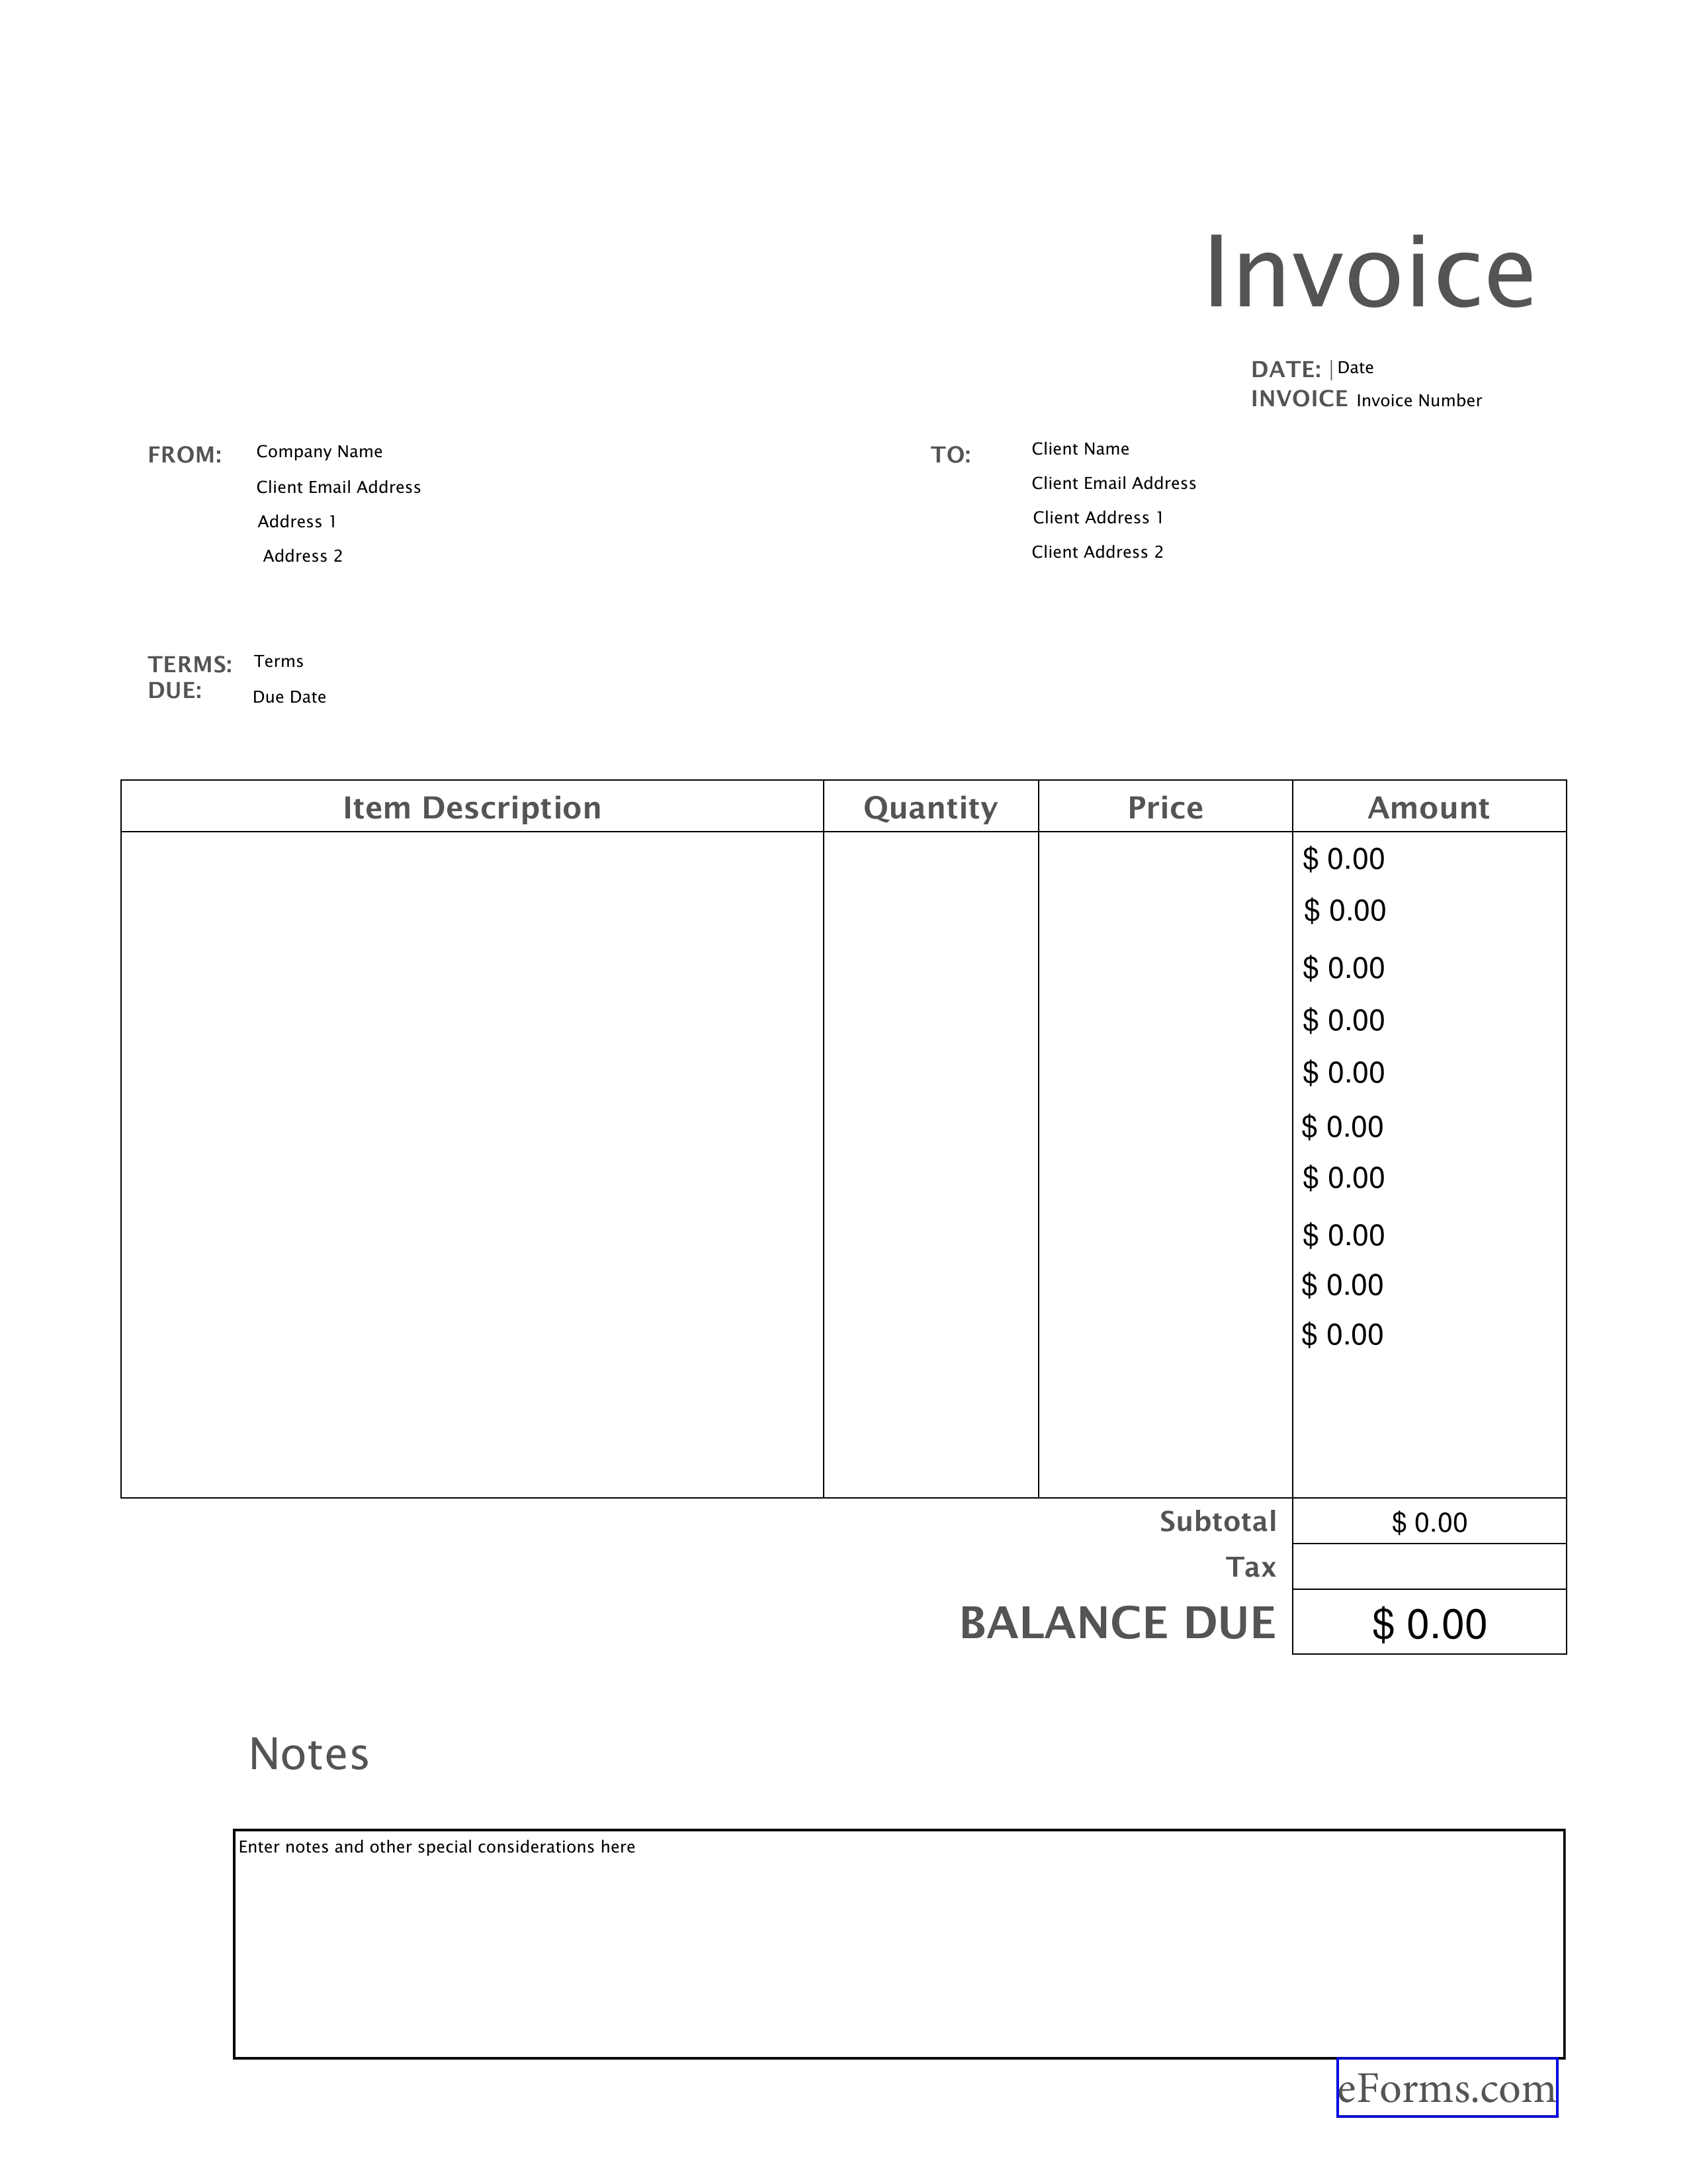 Fill In Invoice Pdf * Invoice Template Ideas